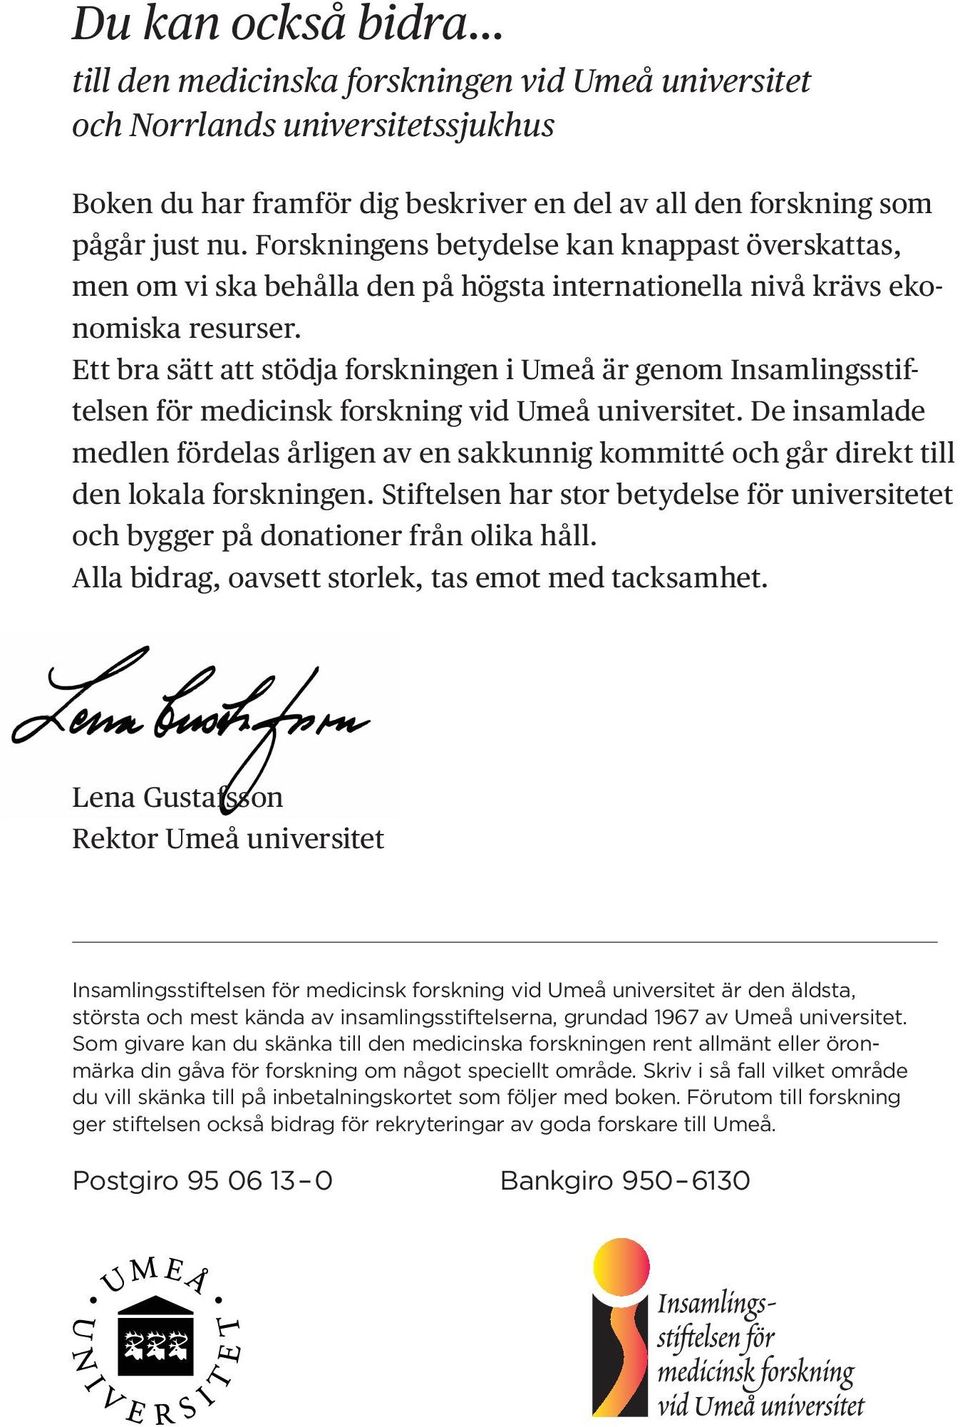 Ett bra sätt att stödja forskningen i Umeå är genom Insamlingsstiftelsen för medi cinsk forskning vid Umeå universitet.